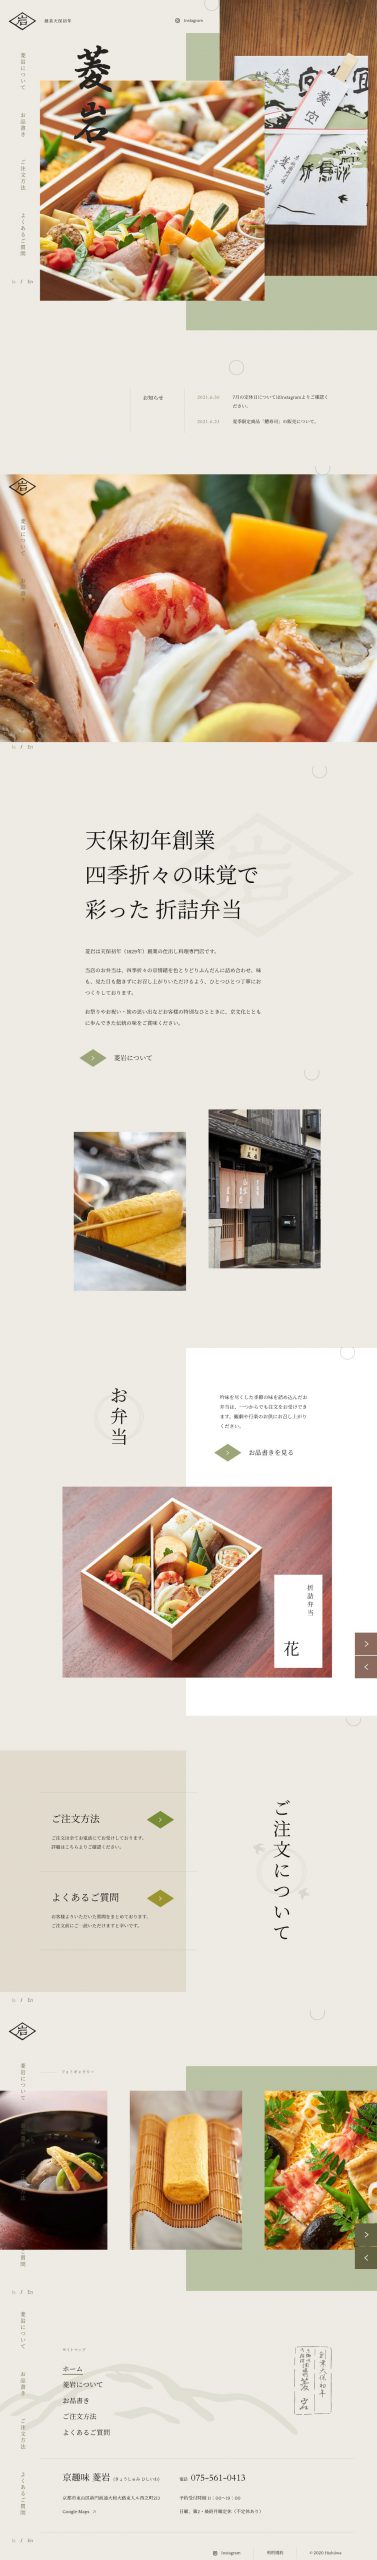 飲食店・カフェ ホームページ制作 WEBデザイン参考ギャラリー 菱岩